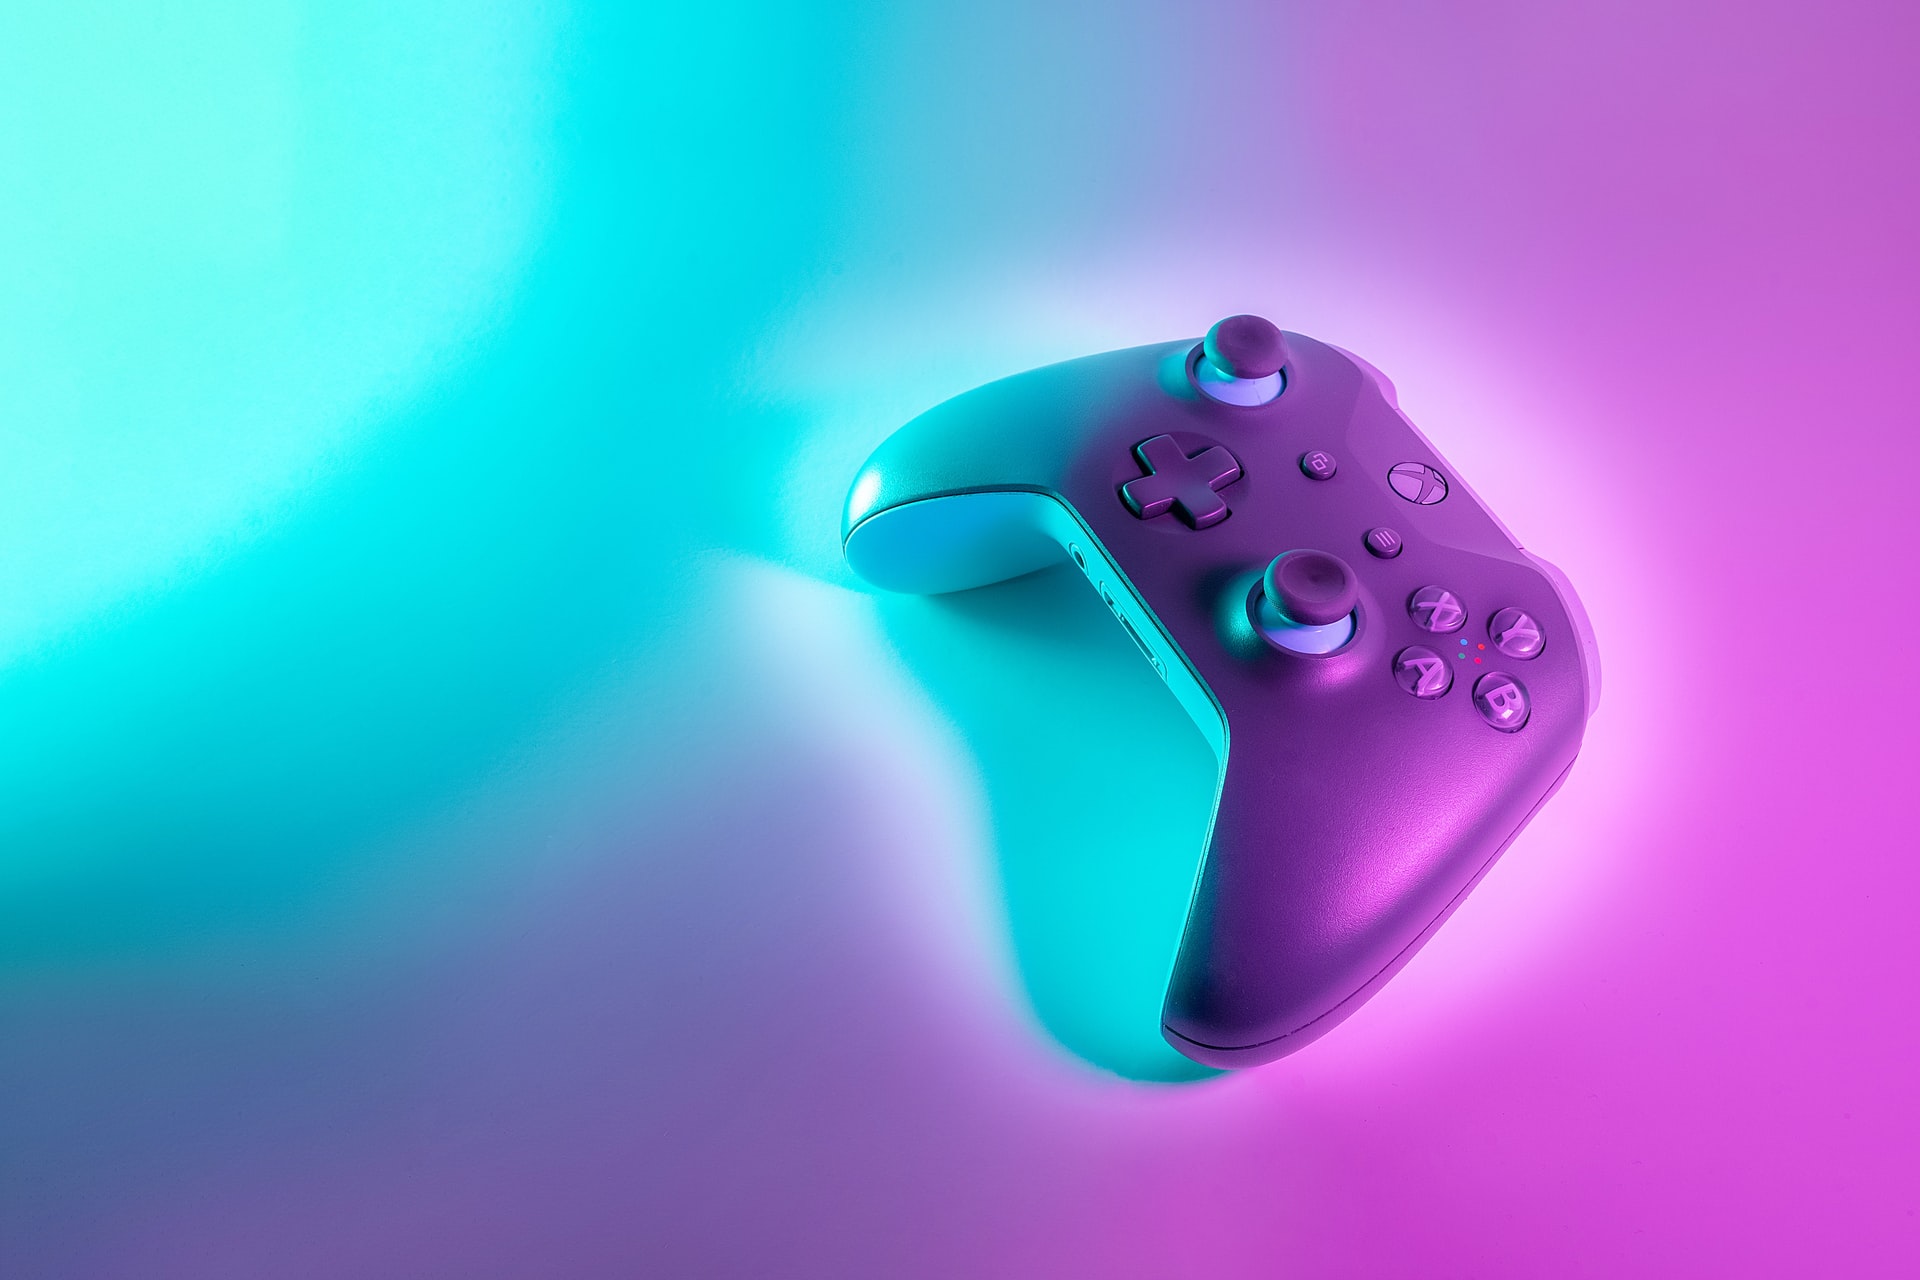 Ein Xbox-Controller liegt auf türkis-pinker beleuchteten Oberfläche.